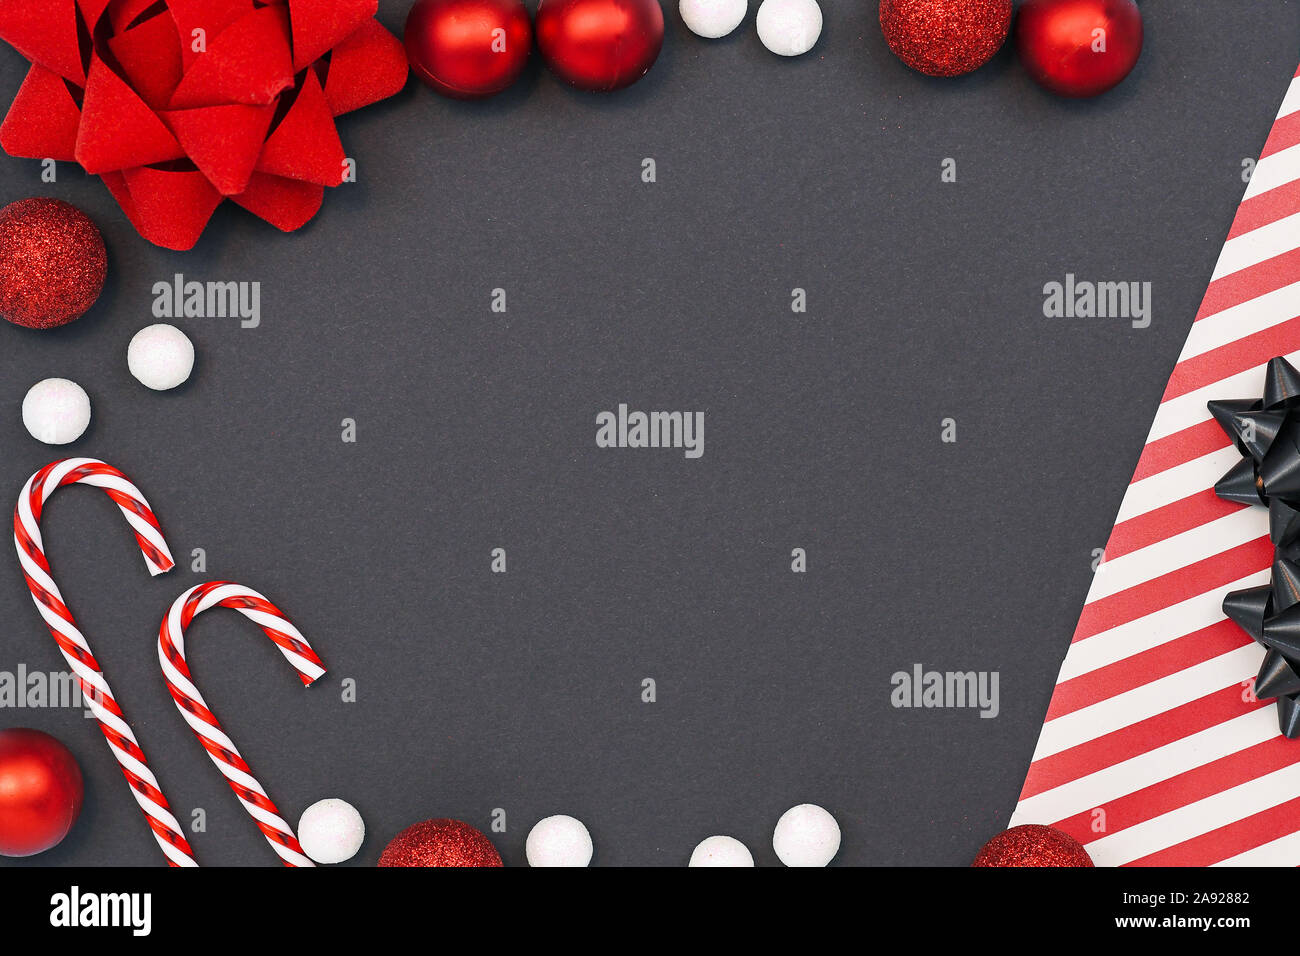 Elegante piso de temporada sentar antecedentes con el papel de envolver a rayas, bastones de caramelo, bolas de nieve blanca, cinta roja y ornamento del árbol de Navidad Bolas o Foto de stock